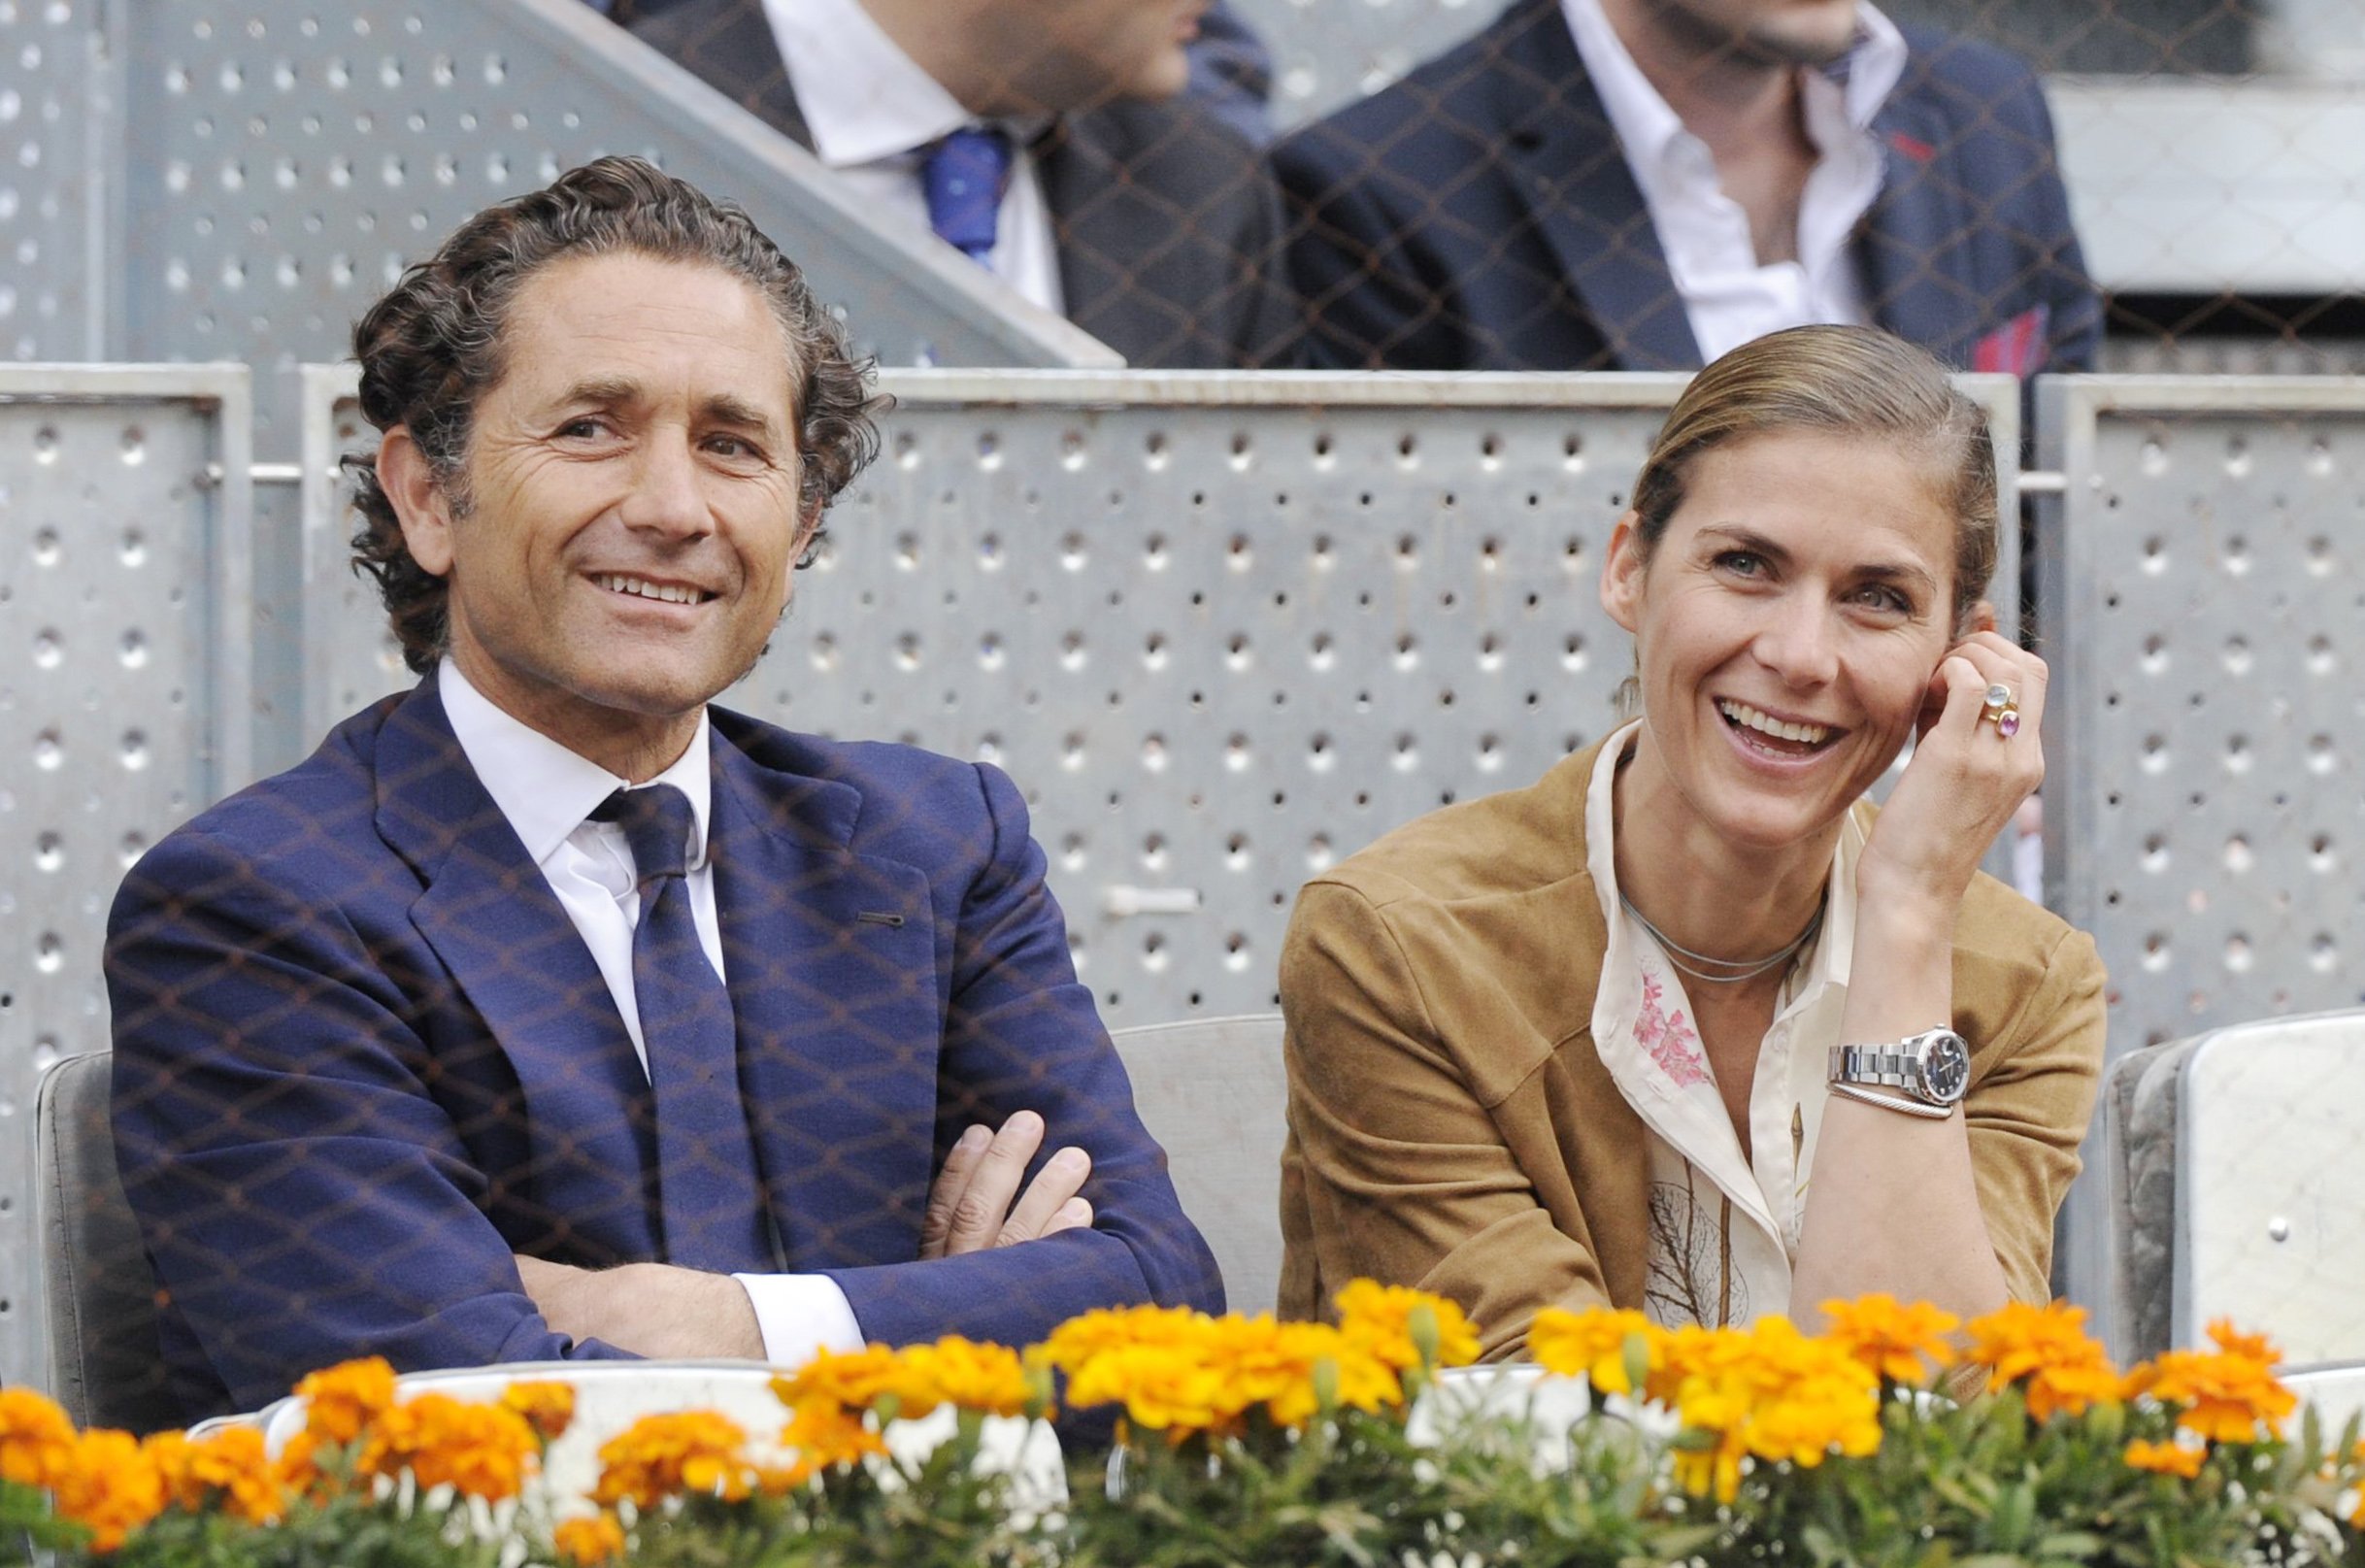 Álvaro Fuster y Beatriz Mira en el torneo de tenis Mutua Madrid Open el 7 de mayo de 2013 en Madrid, España. | Foto: Getty Images